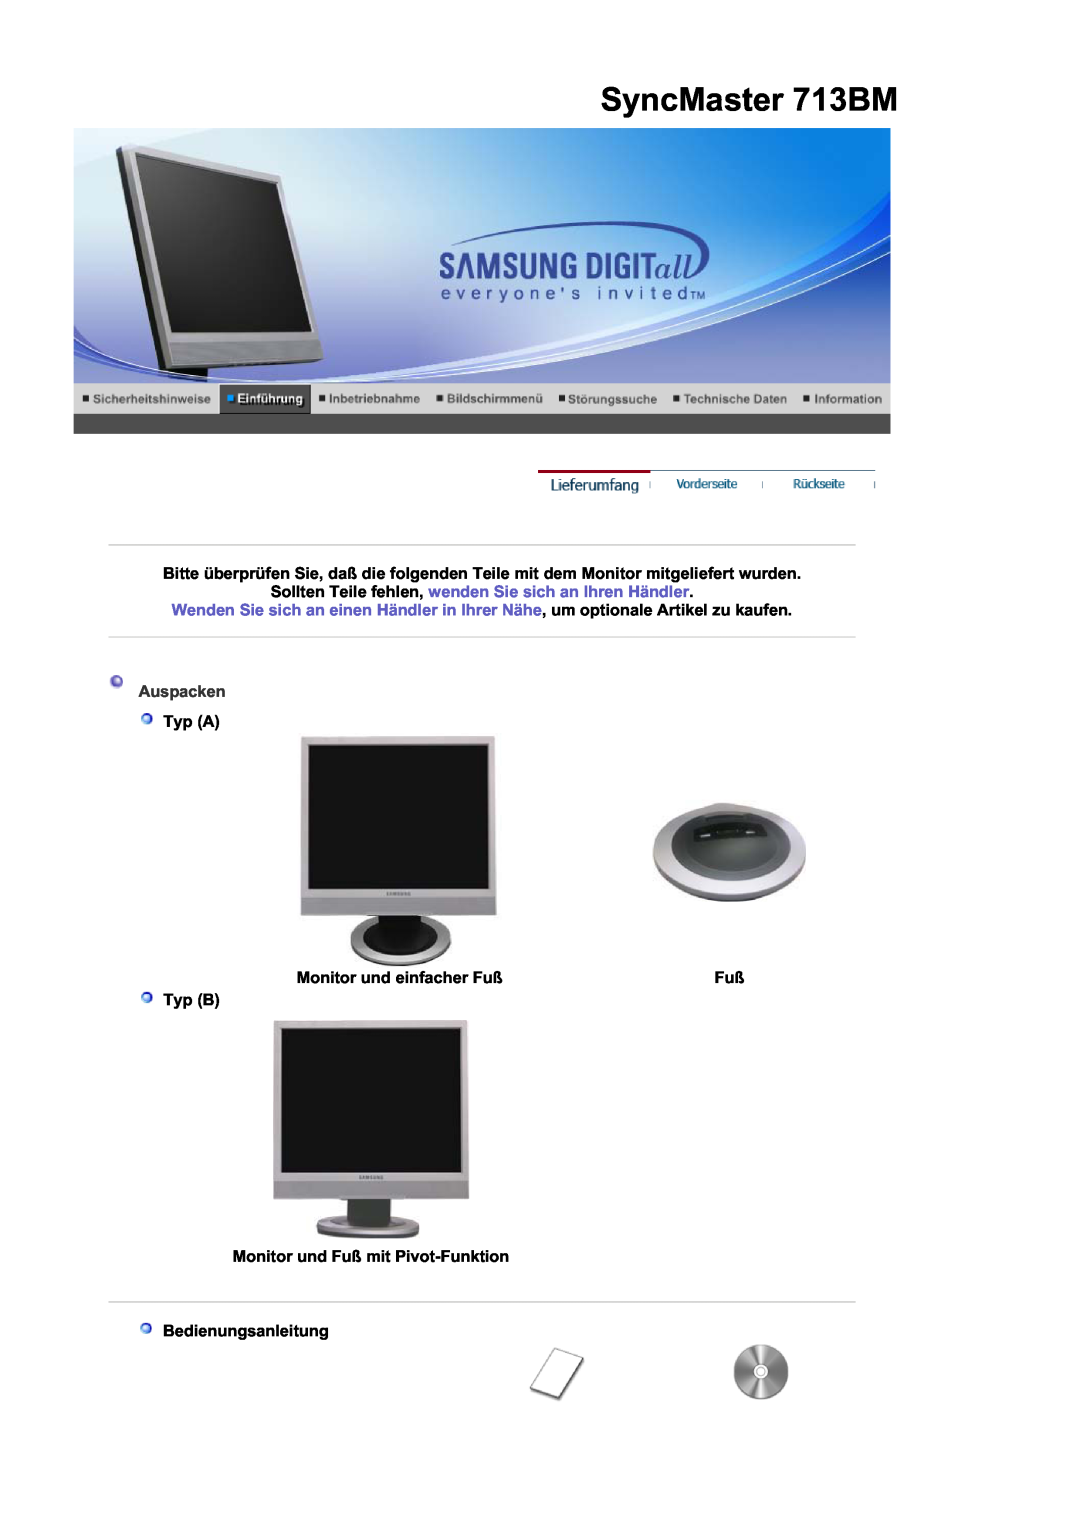 Samsung LS17MJSKS/EDC manual SyncMaster 713BM, Typ A, Monitor und einfacher Fuß, Typ B Monitor und Fuß mit Pivot-Funktion 